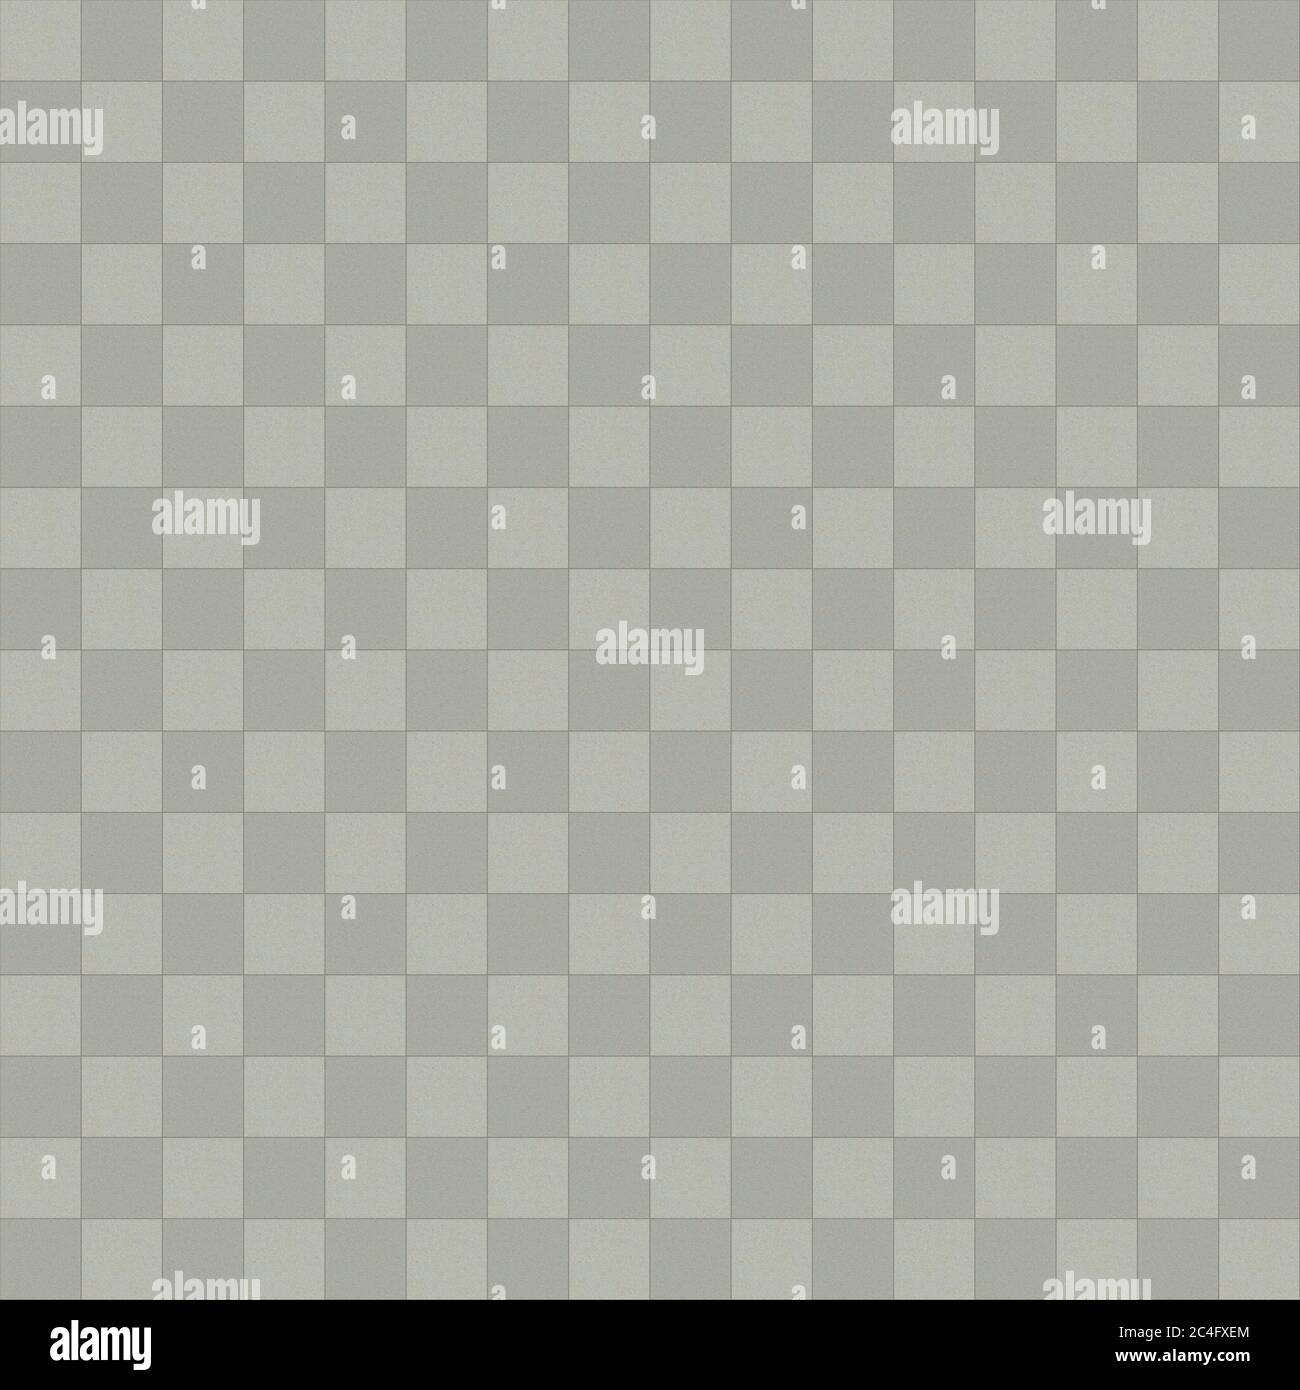 Seamless checkered tiles texture Stock Photo